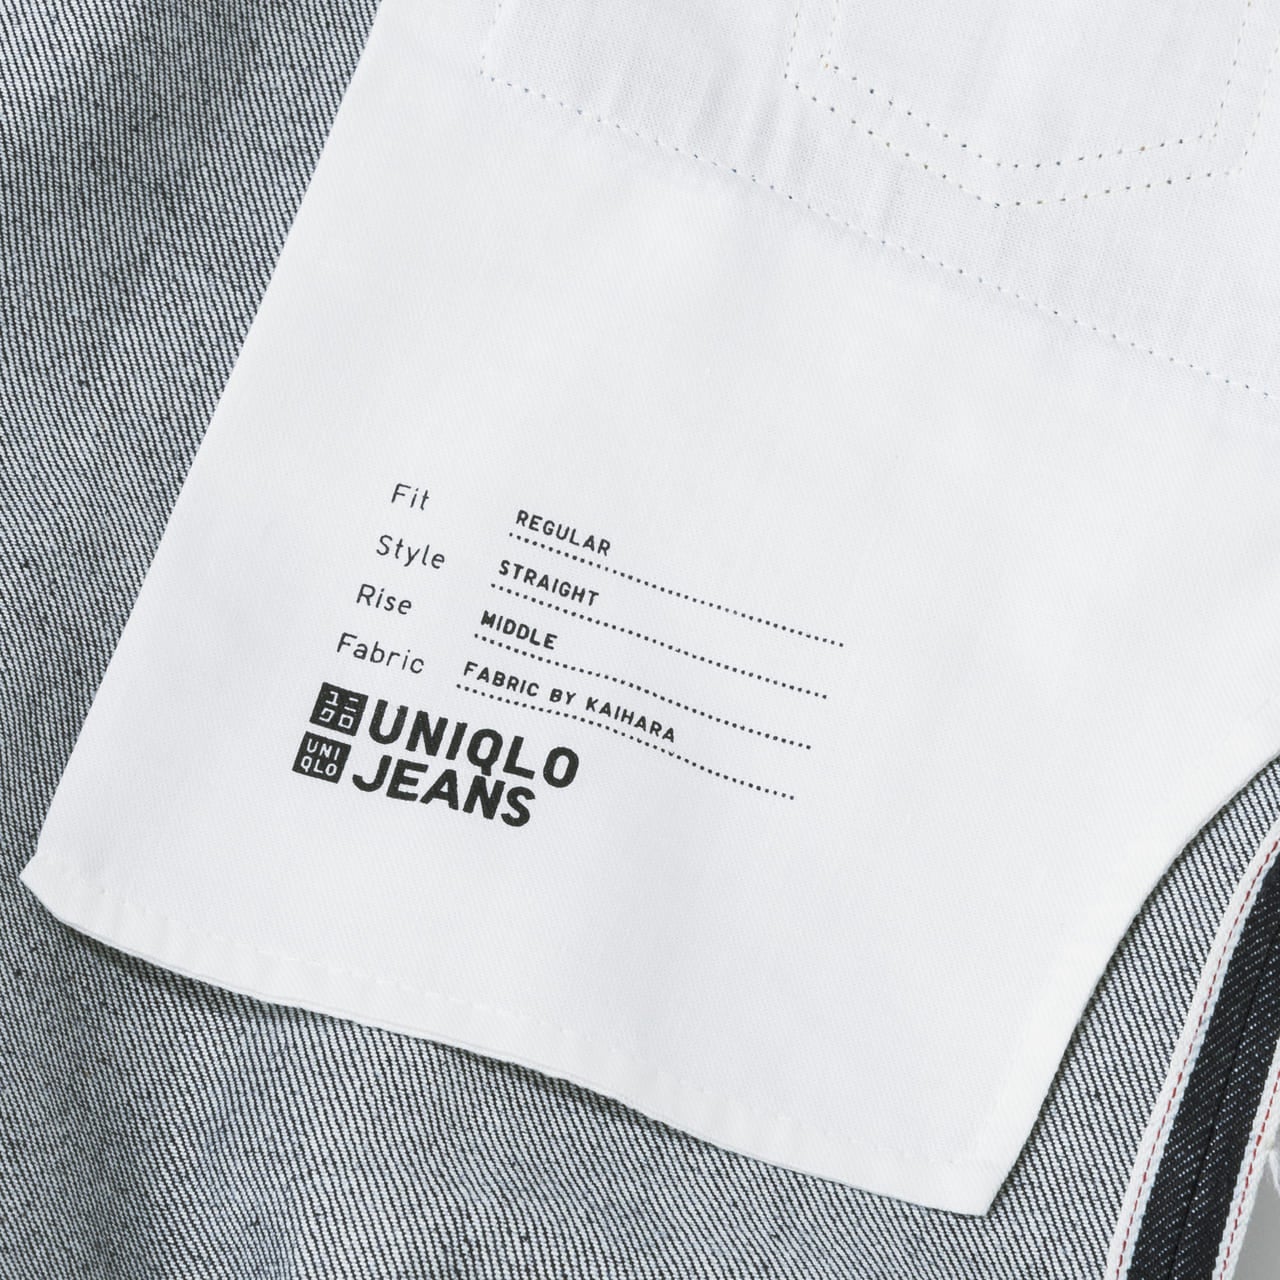 ユニクロのセルビッジレギュラーフィット ストレートジーンズ（丈標準78.5cm）の内ポケットの布裏